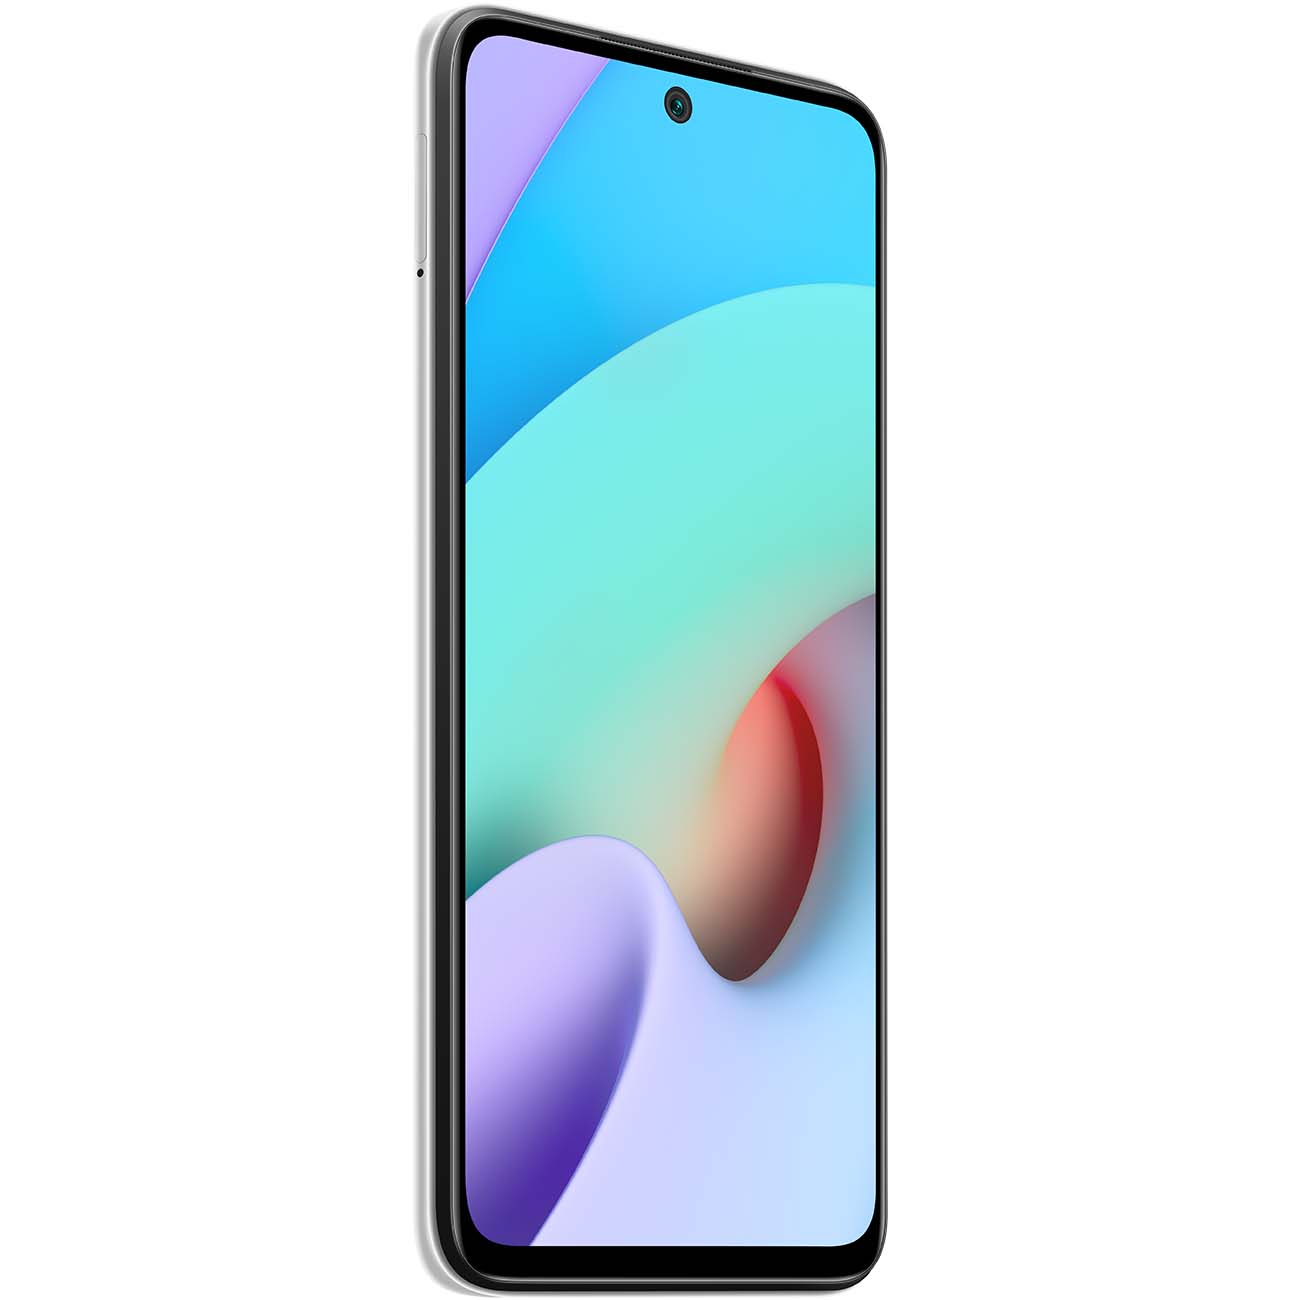 Купить смартфон xiaomi redmi 10 4+64gb pebble white Смартфоны в официальном магазине Apple, Samsung, Xiaomi. iPixel.ru Купить, заказ, кредит, рассрочка, отзывы,  характеристики, цена,  фотографии, в подарок.